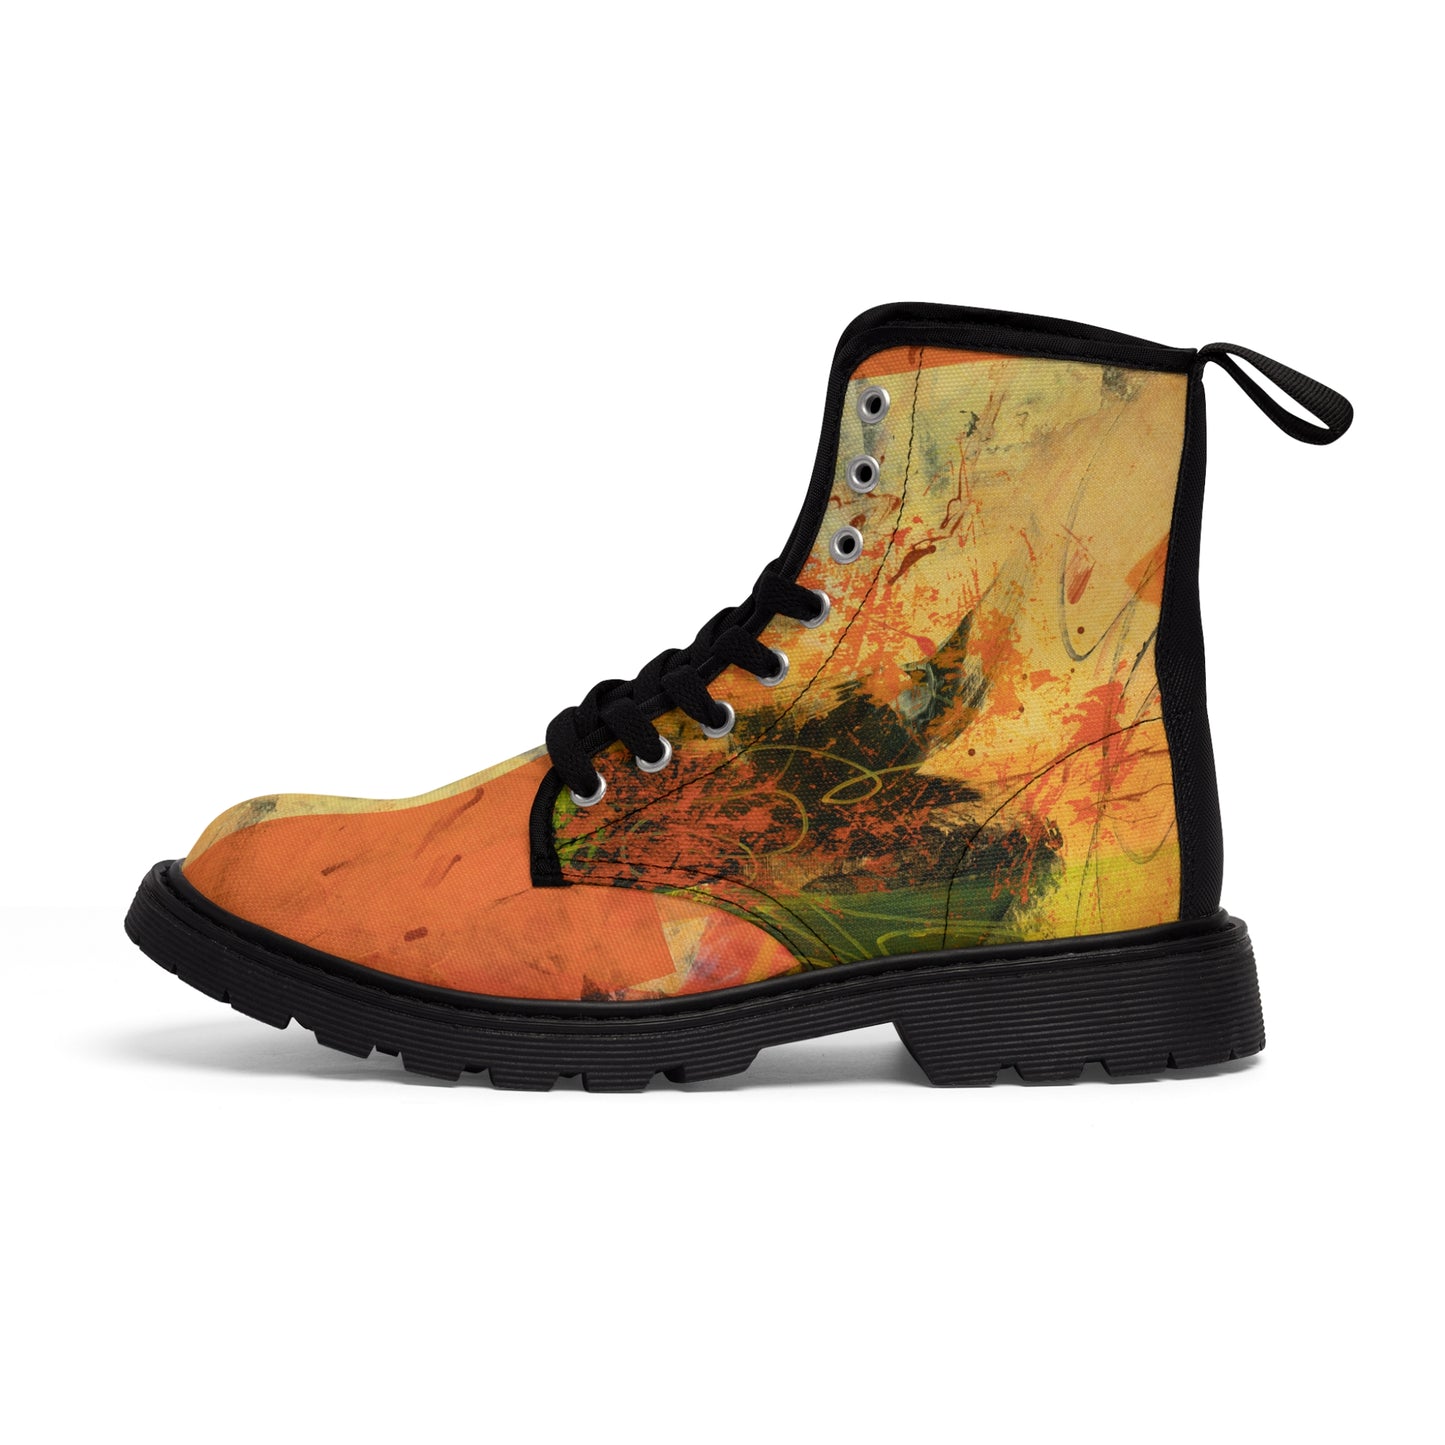 Men's Canvas Boots - 02868 US 10.5 Black sole